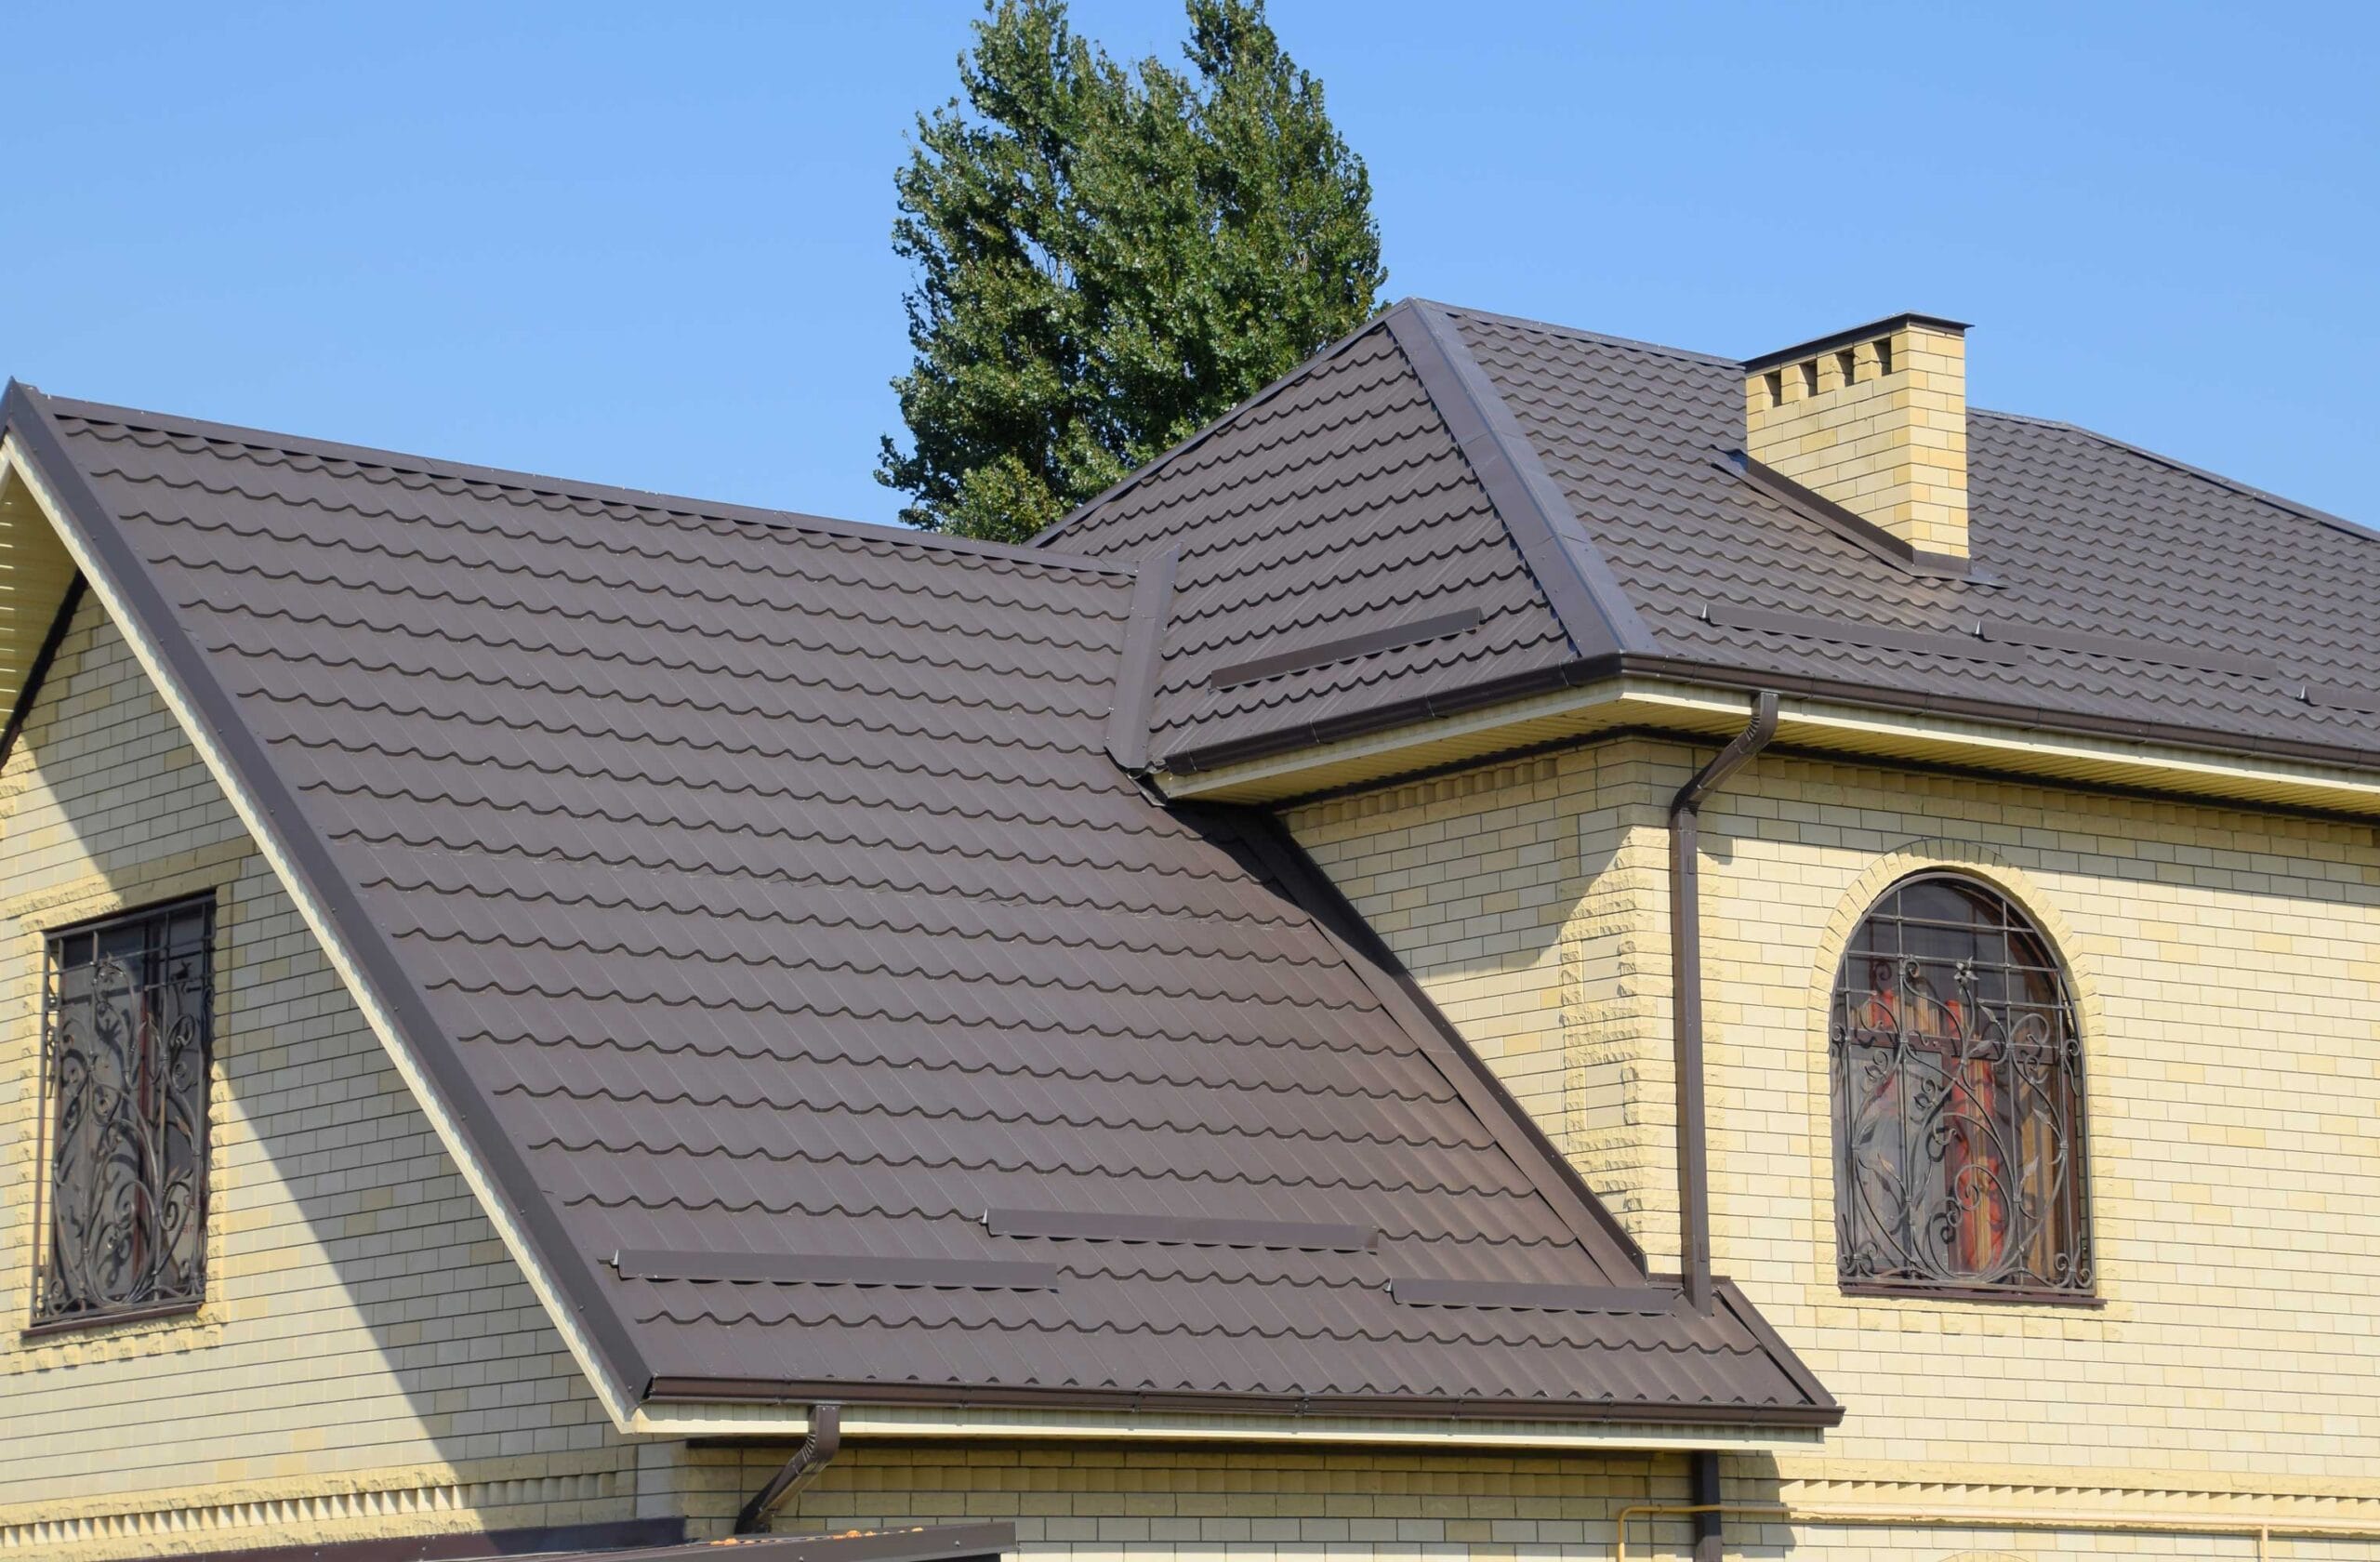 metal roofing benefits, metal roof aesthetic, increase curb appeal